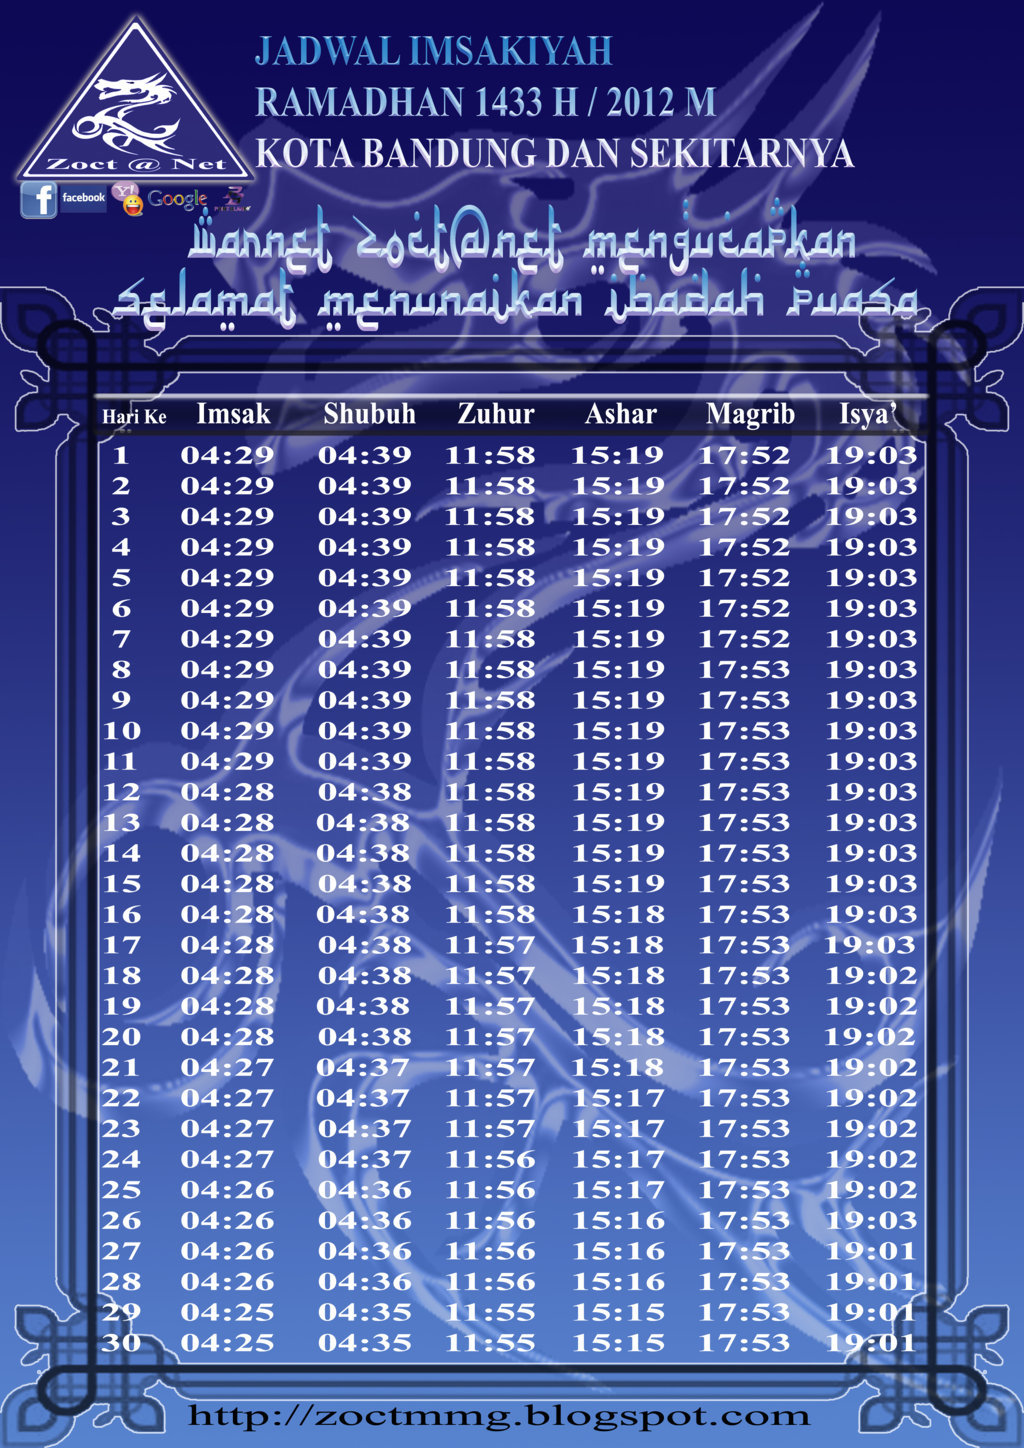 Download Jadwal Puasa Imsakiyah 1433 H/2012 M ~ Zoct Airbrush